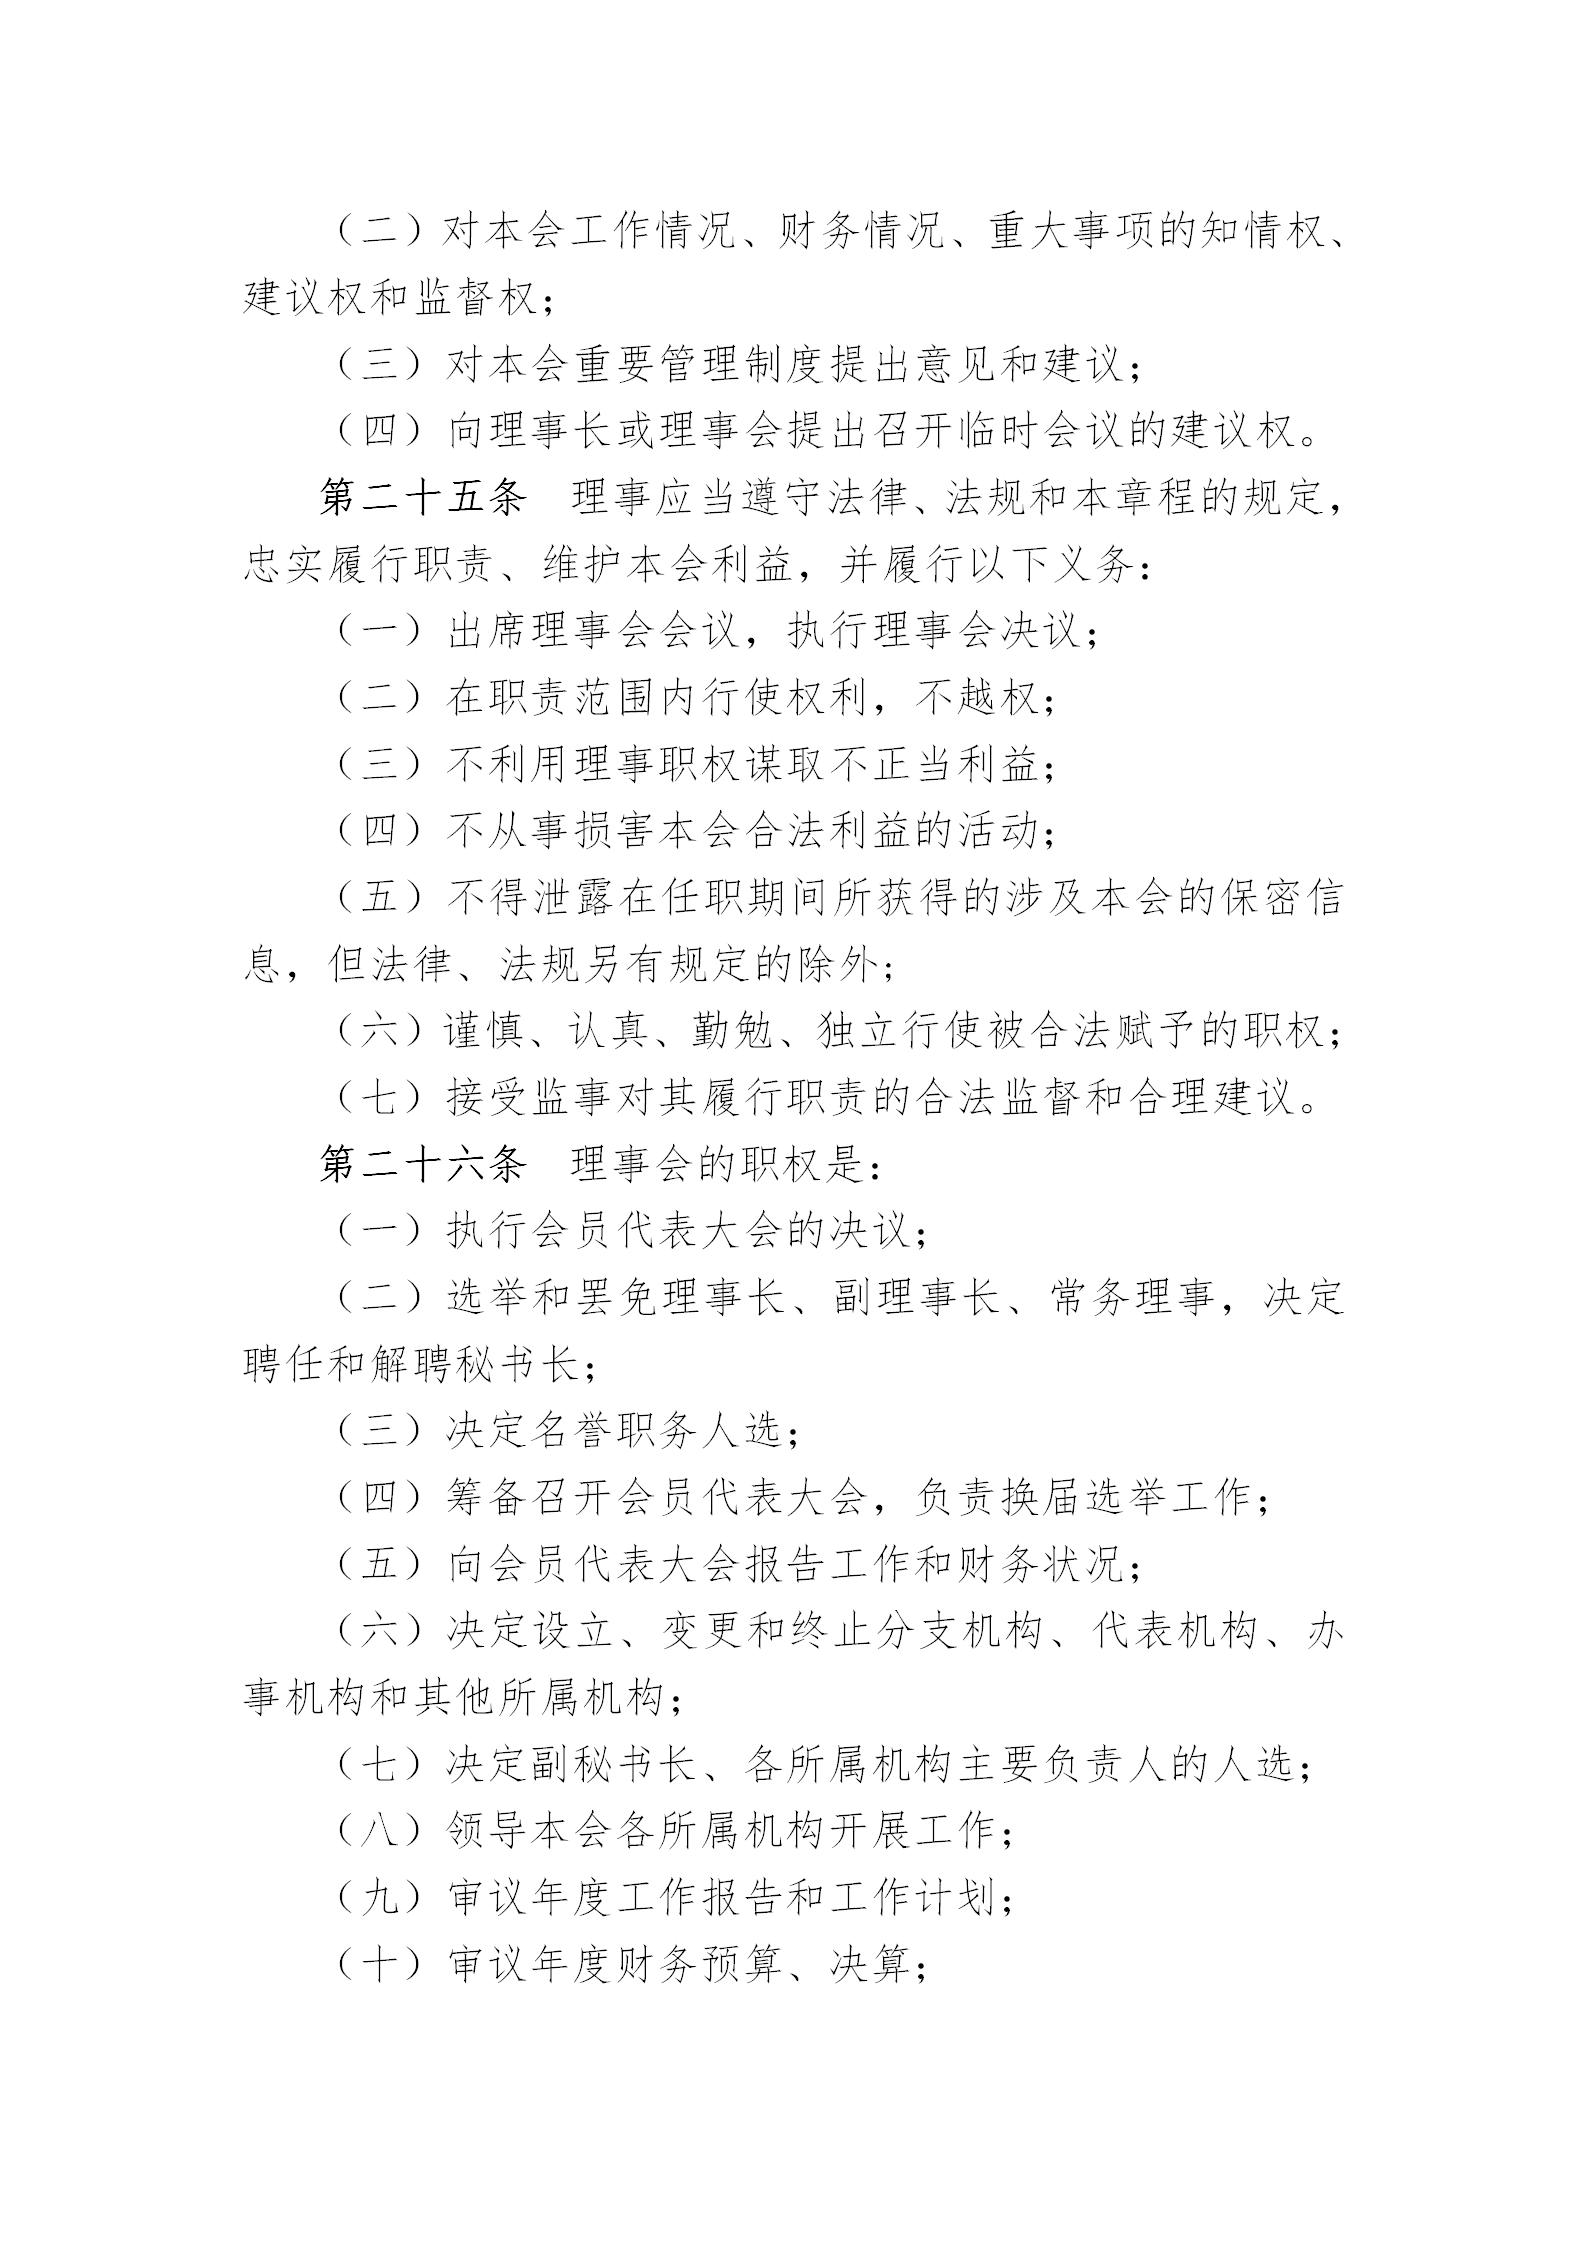 中国演艺设备技术协会章程(定稿)_08.jpg